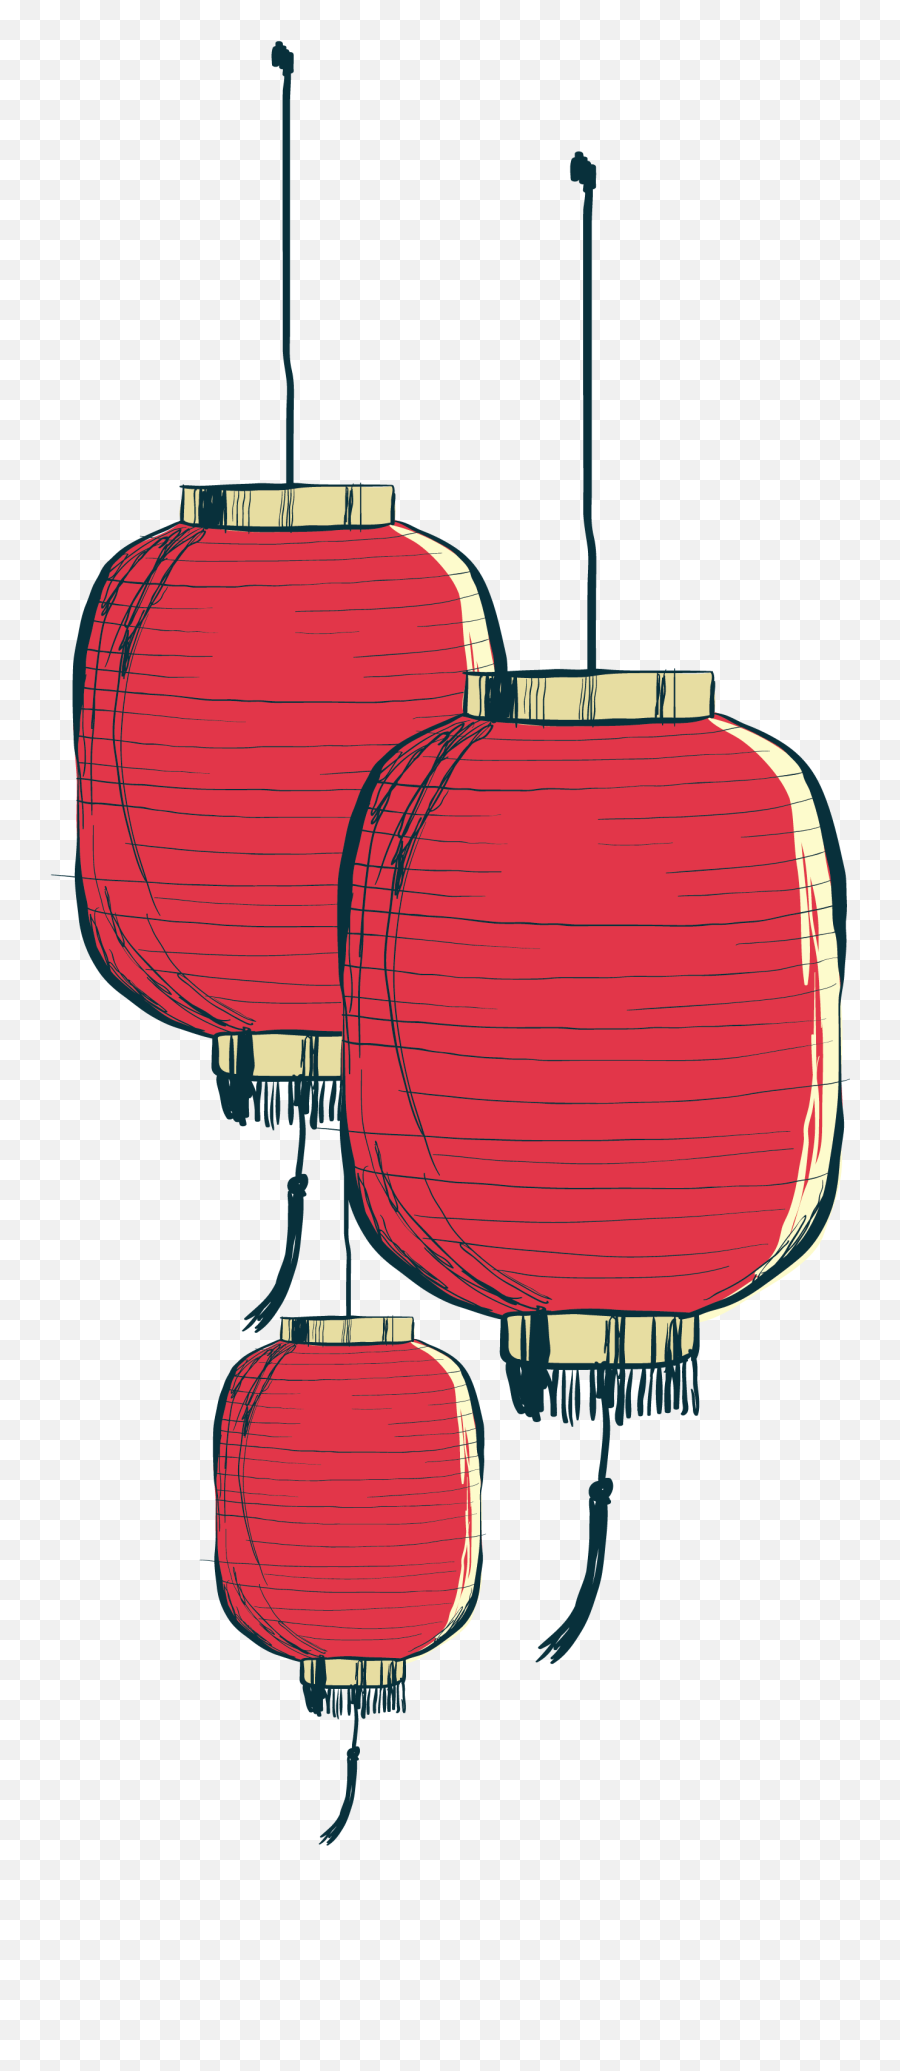 Painted Paper Chinese Hand Lantern - Chinese Lantern Png,Lantern Png